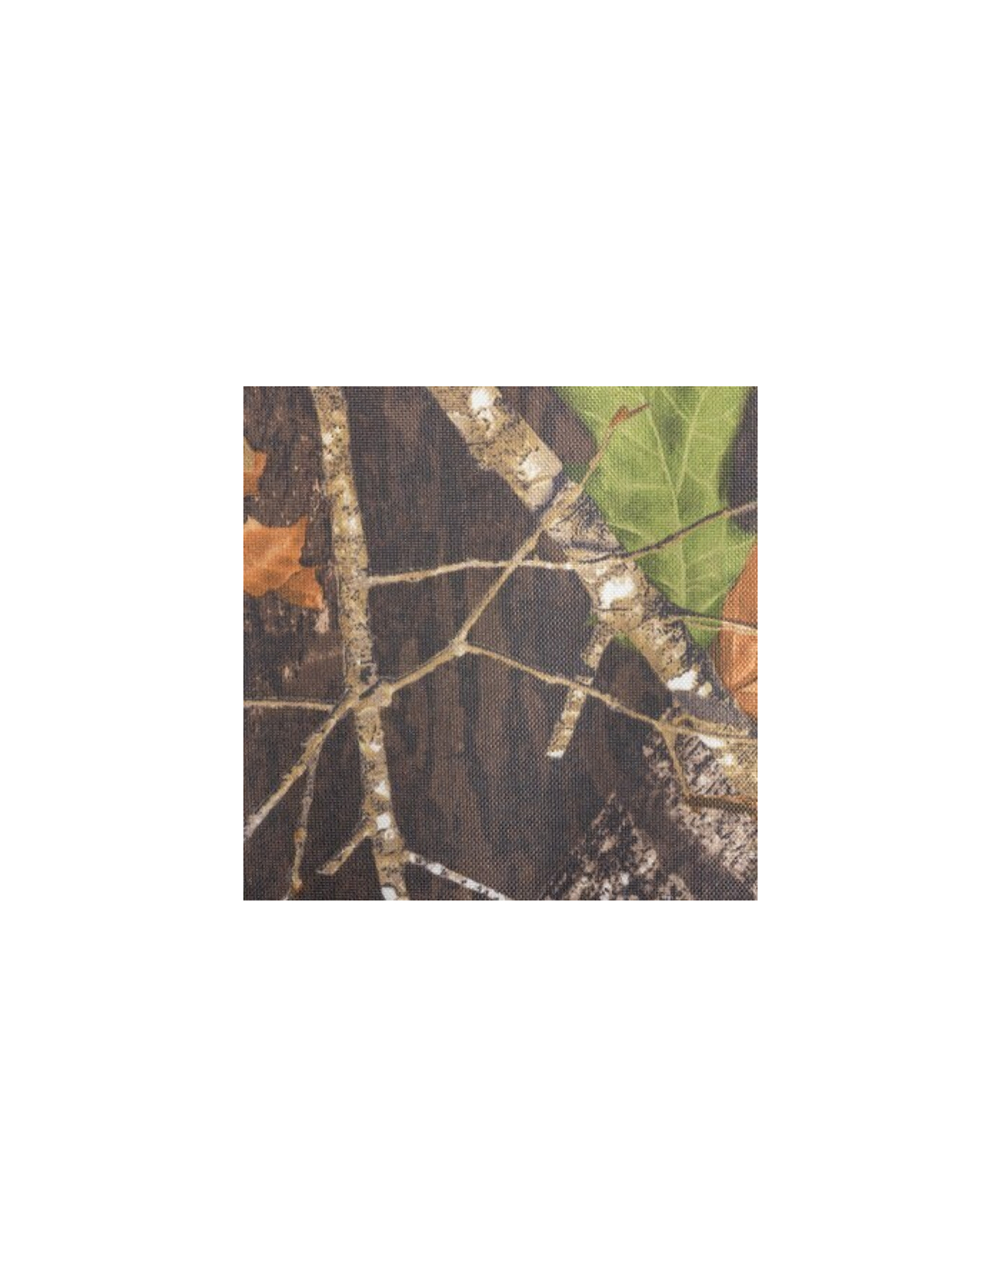 Табурет (стульчик) раскладной туристический ТОНАР листва